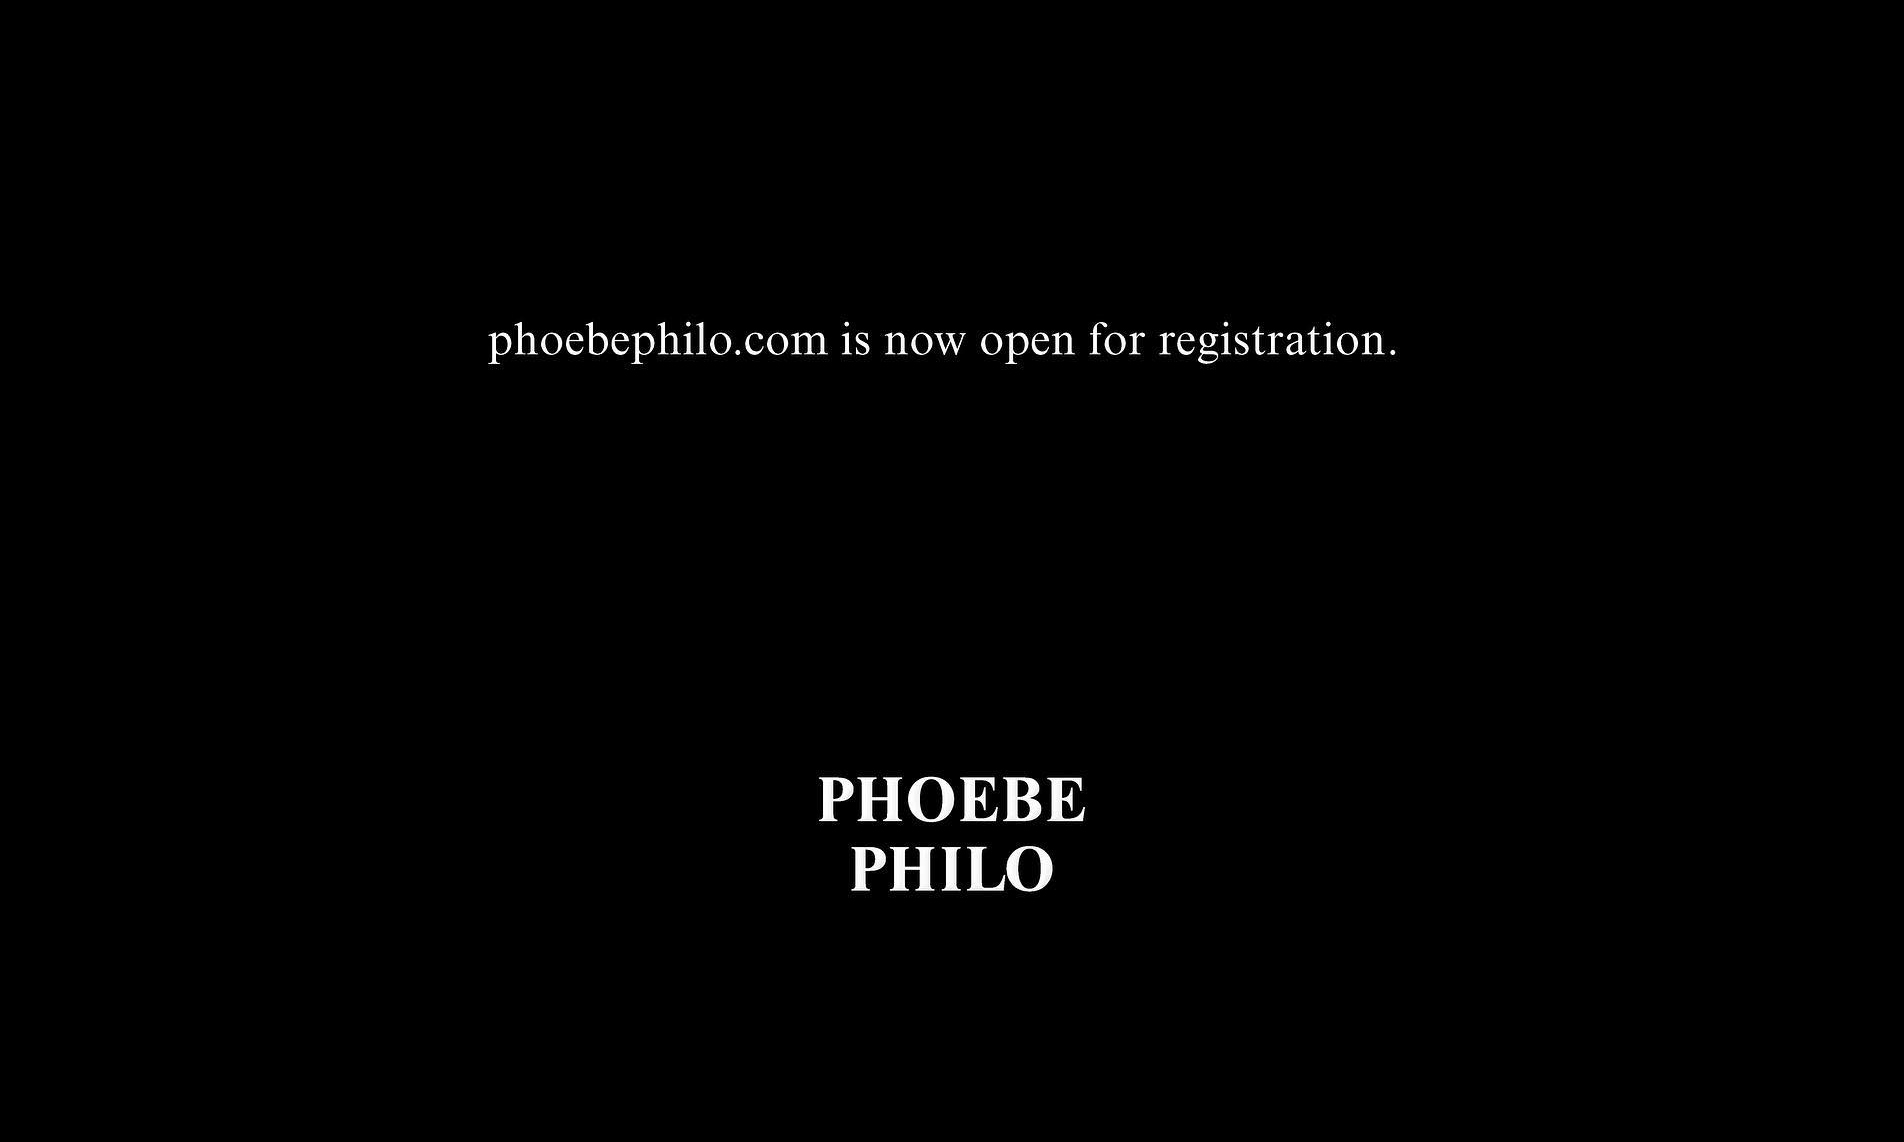 Phoebe Philo 官网正式开放注册